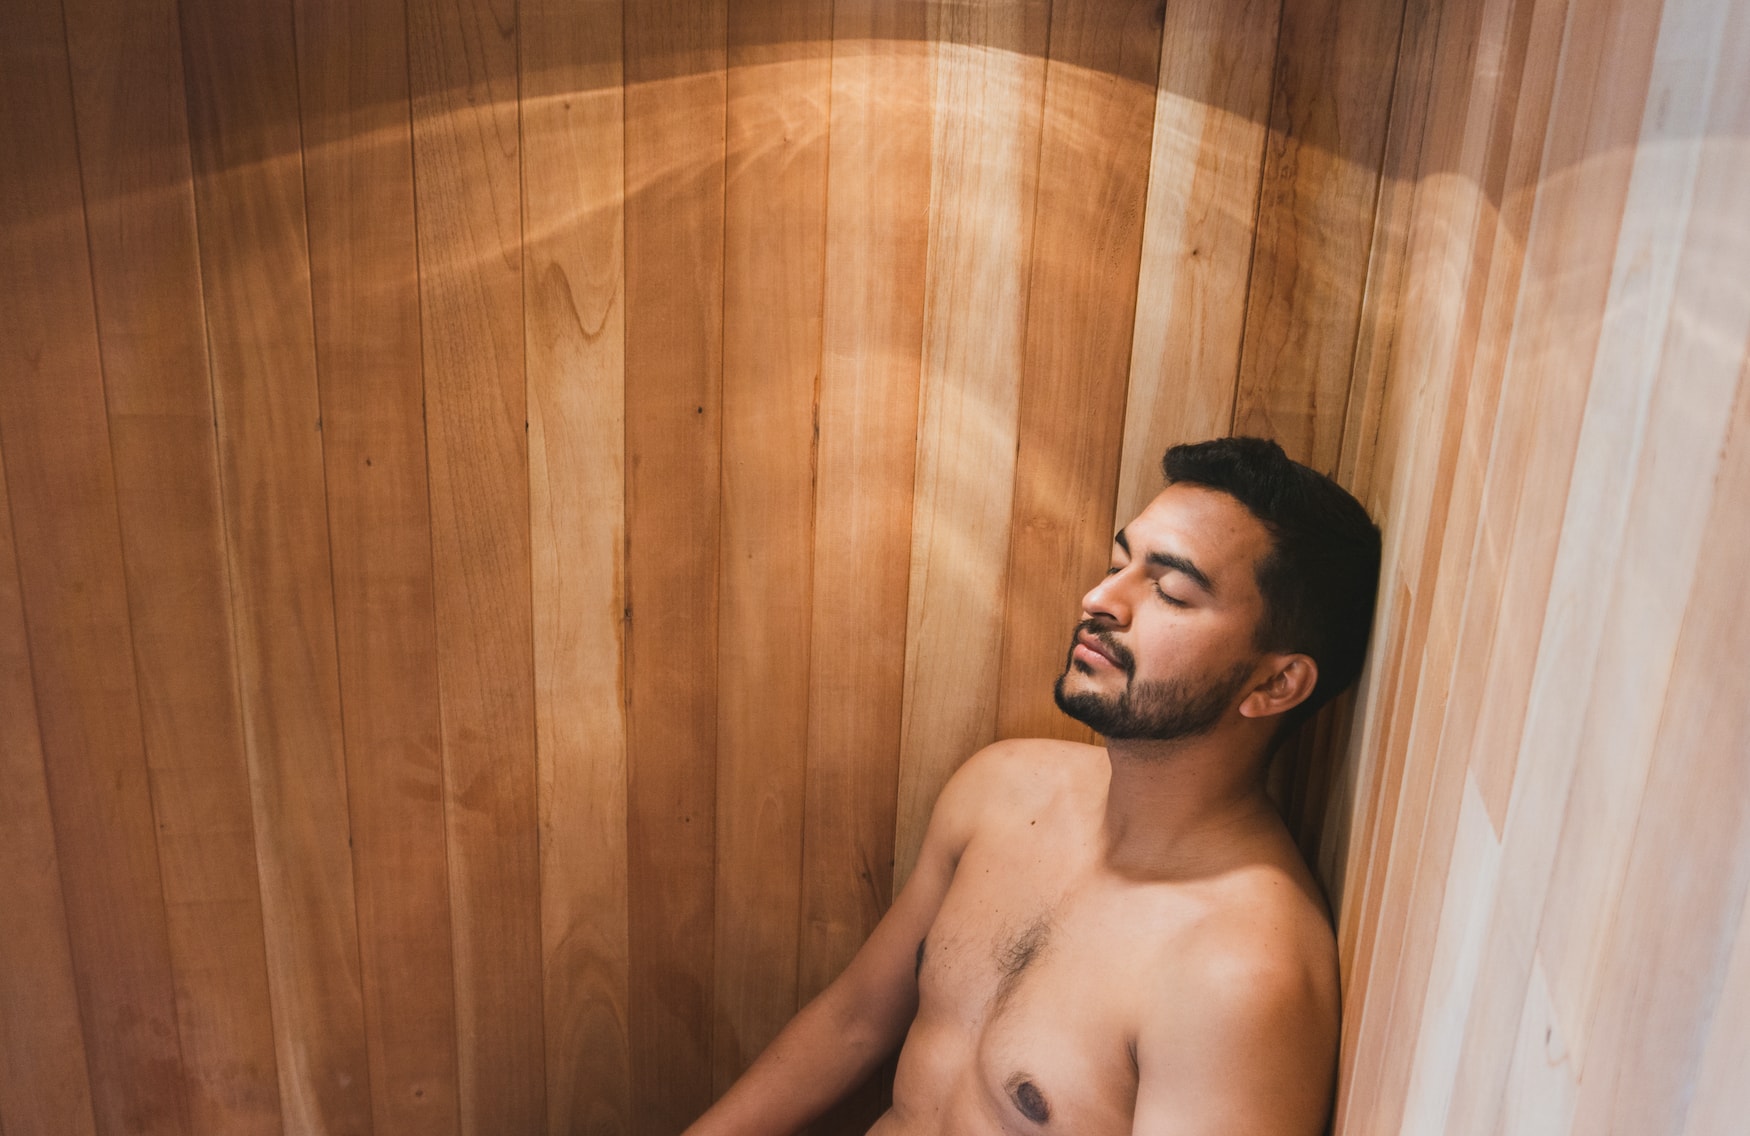 Verhalten in der Sauna? In Deutschland geht man grundsätzlich nackt in die Sauna, so wie der Mann auf dem Foto